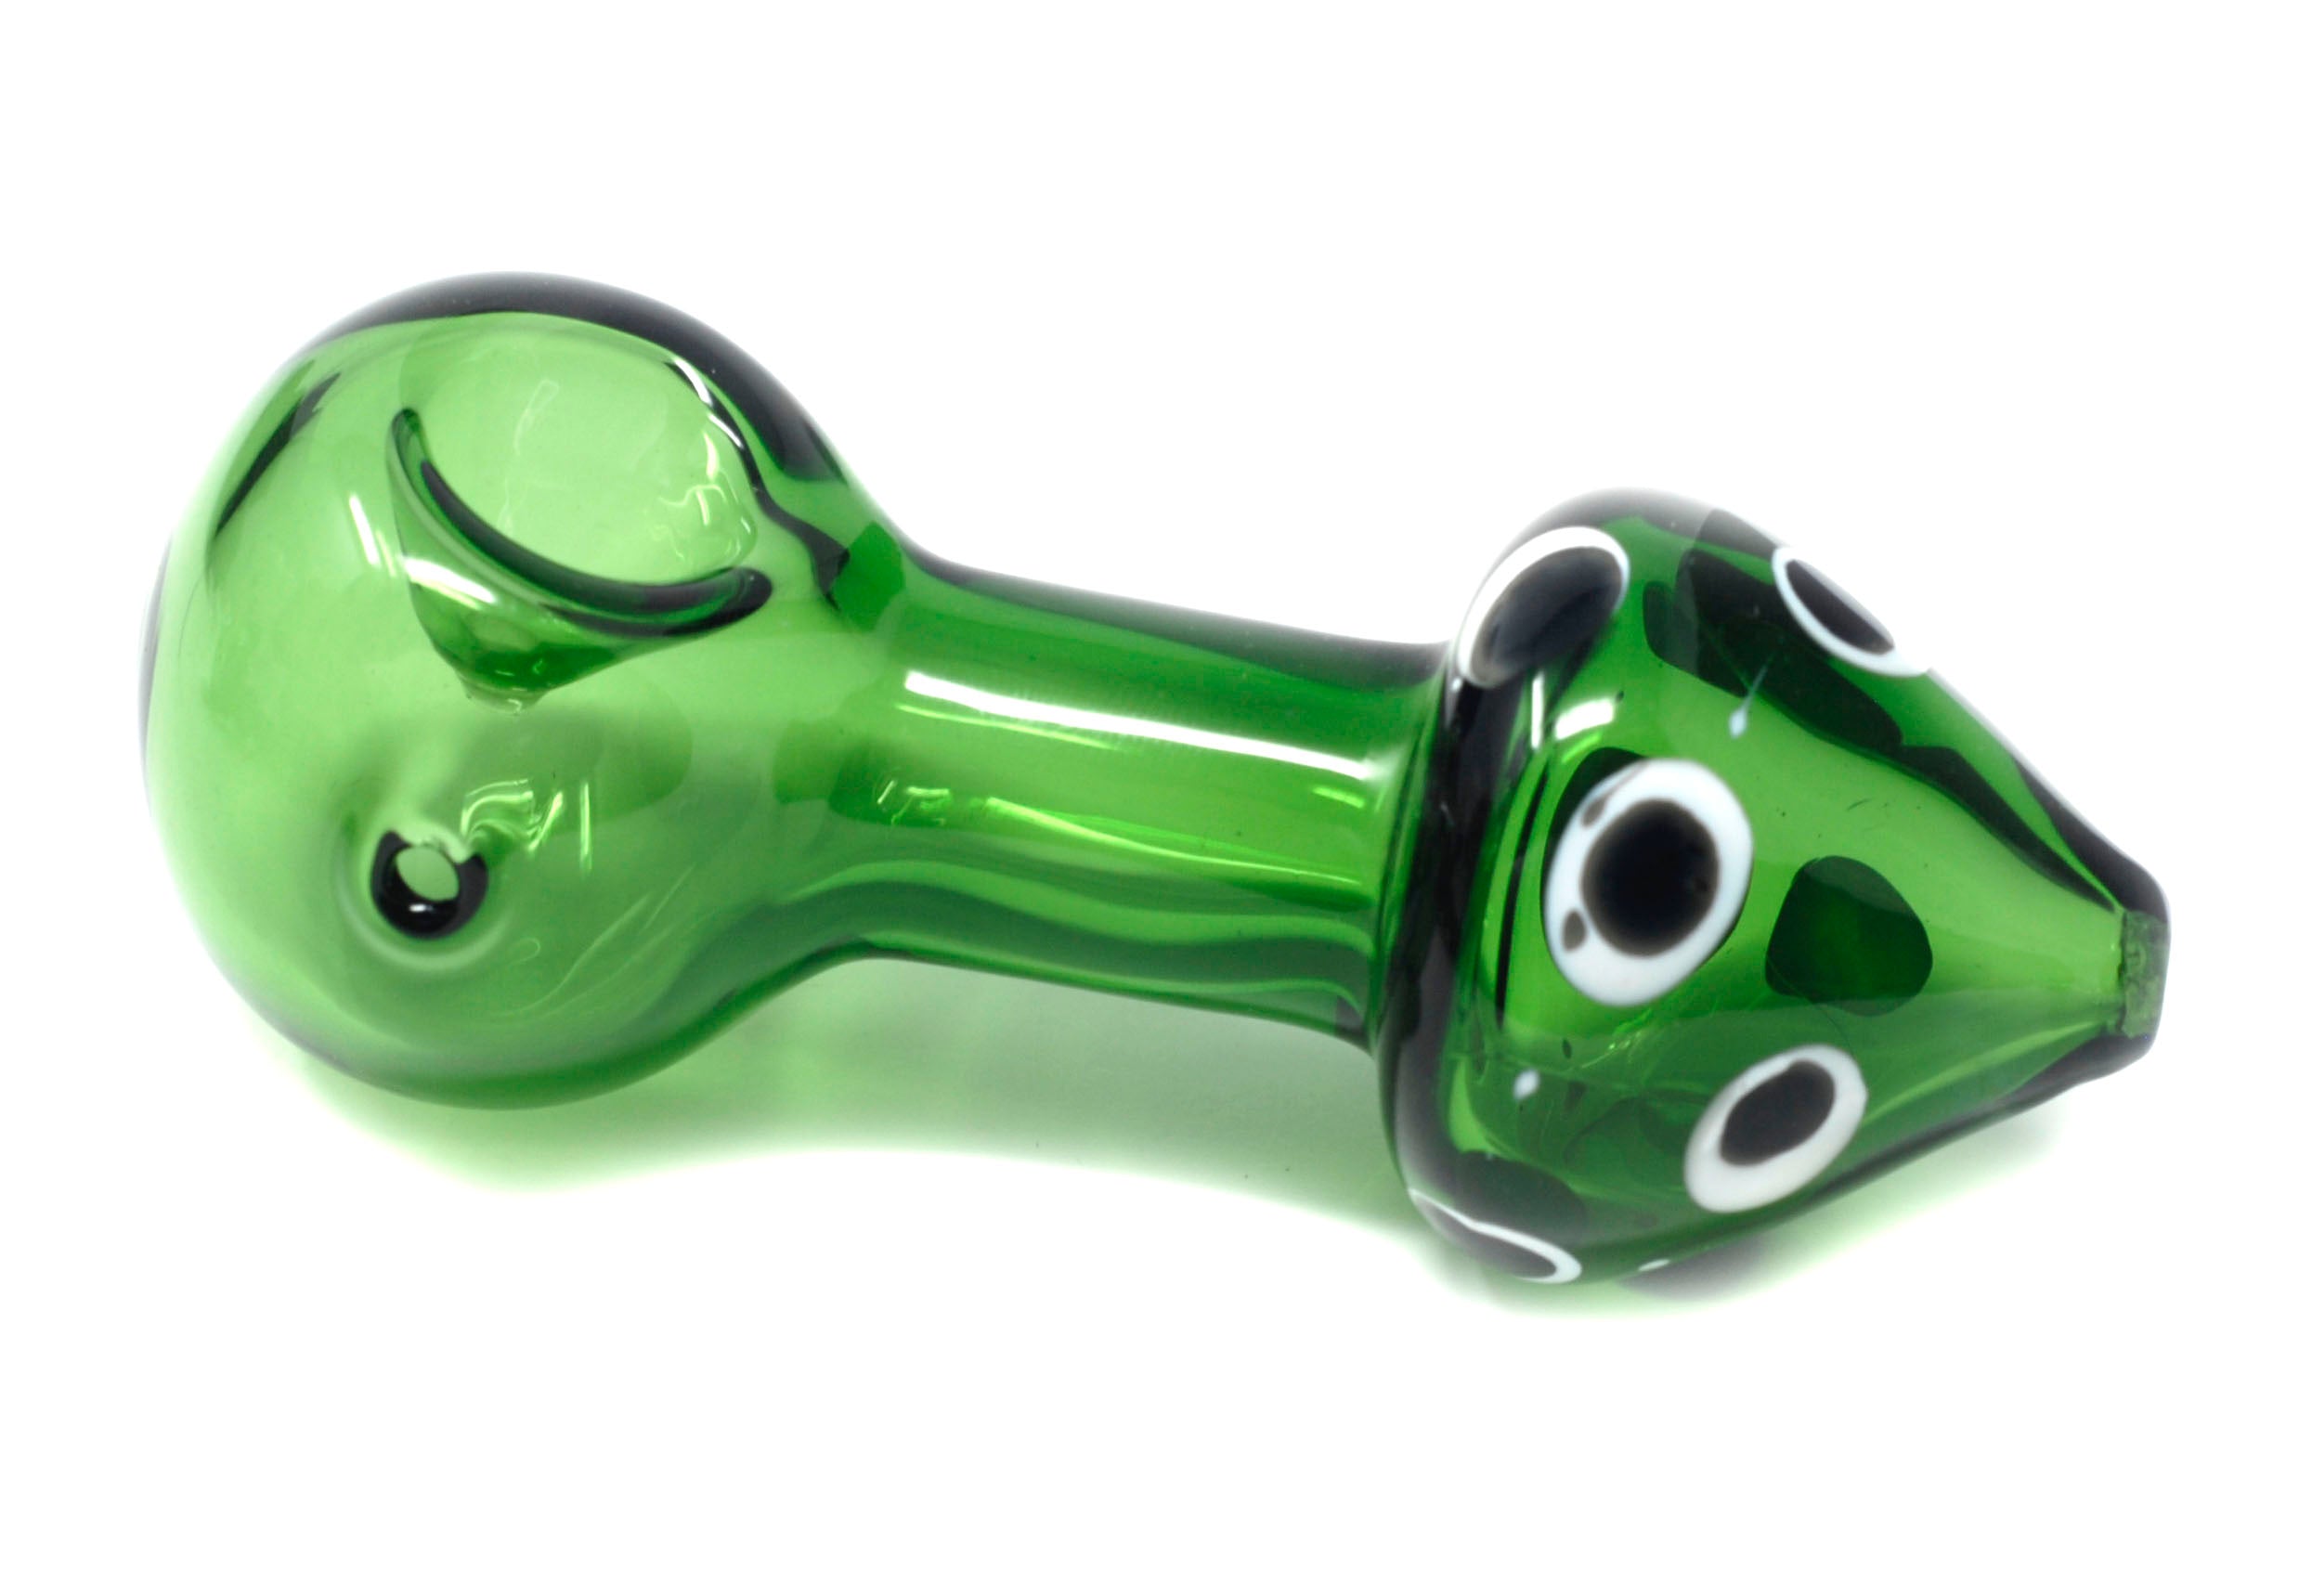 3.5" green mushroom handpipe